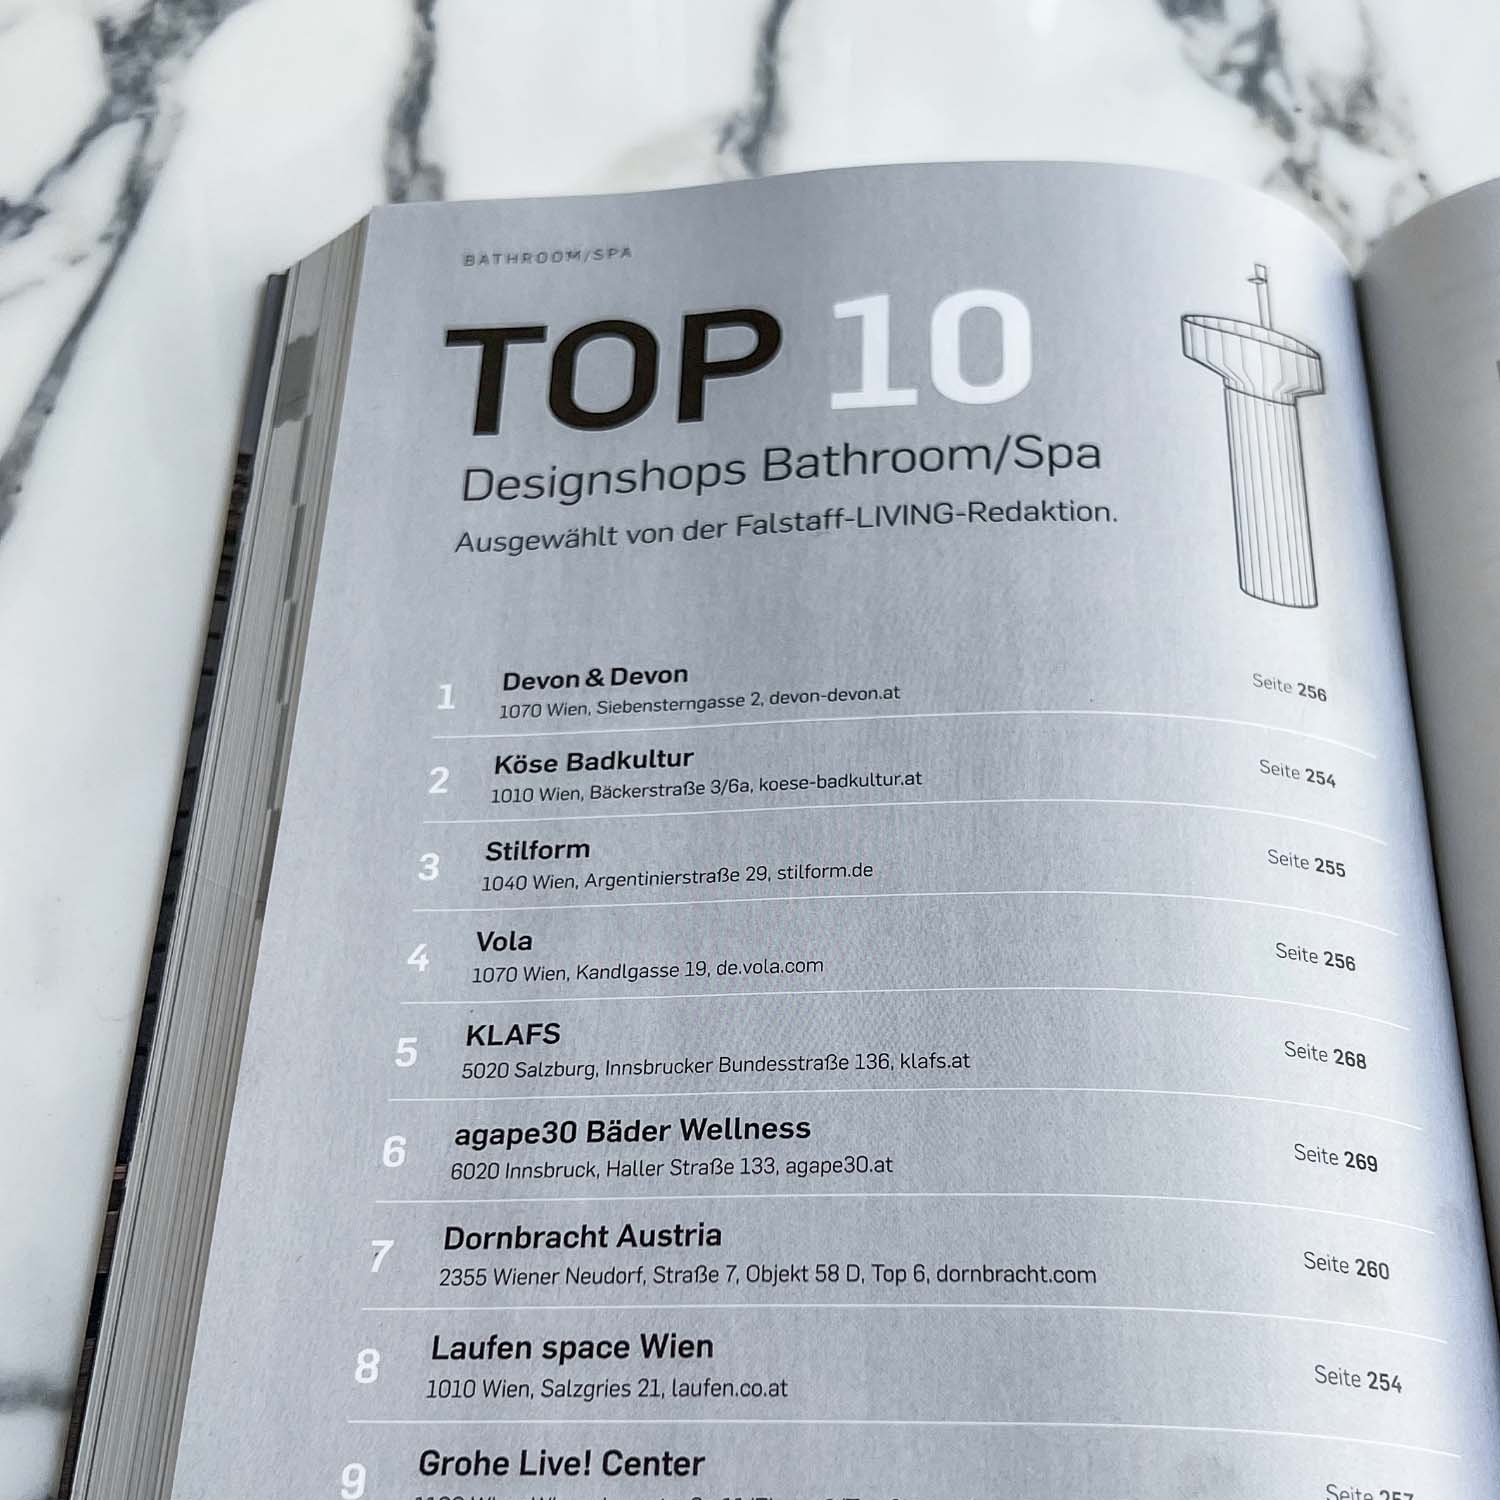 Stilform in Top 10 Designshops für Badezimmer